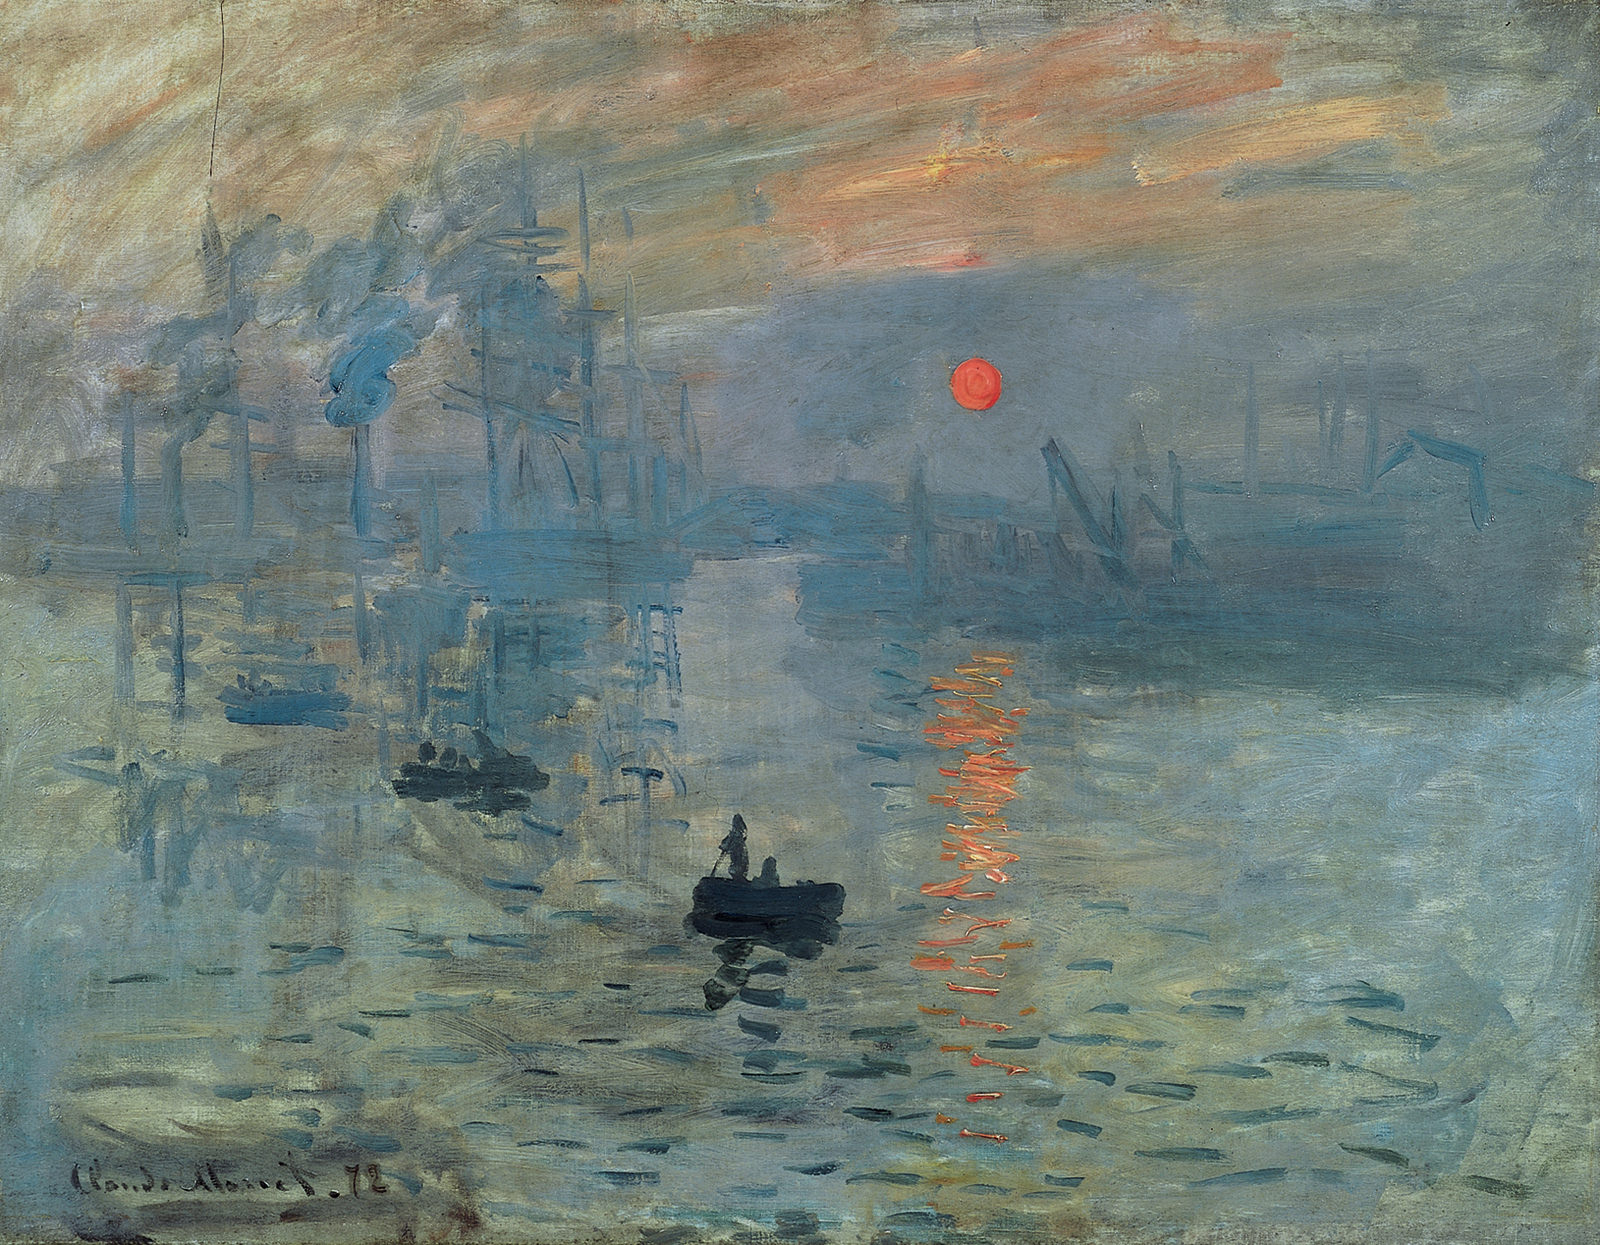 Impression, Sunrise - Claude Monet